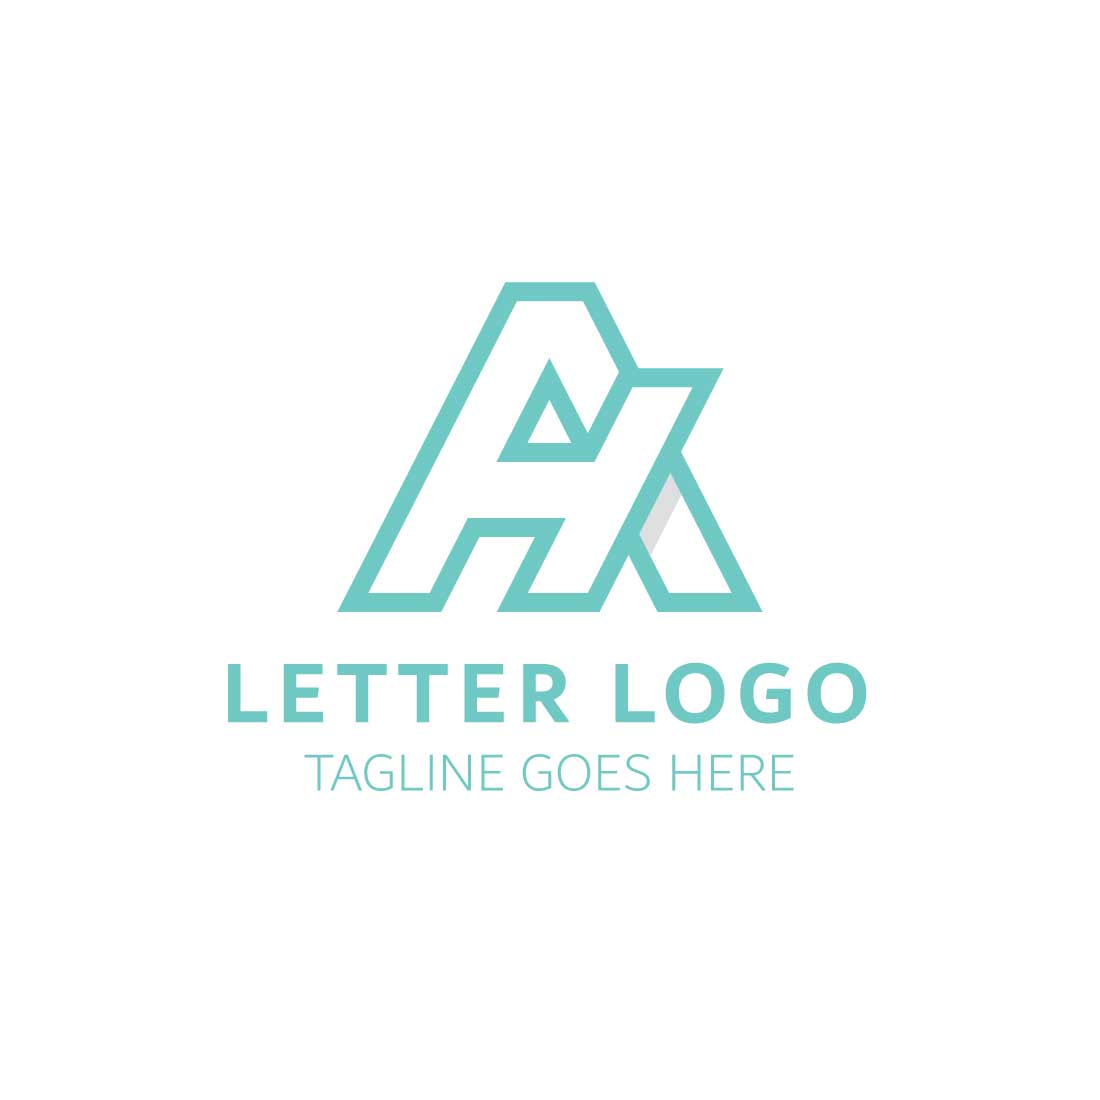 Professional letter AH logo design cover image.